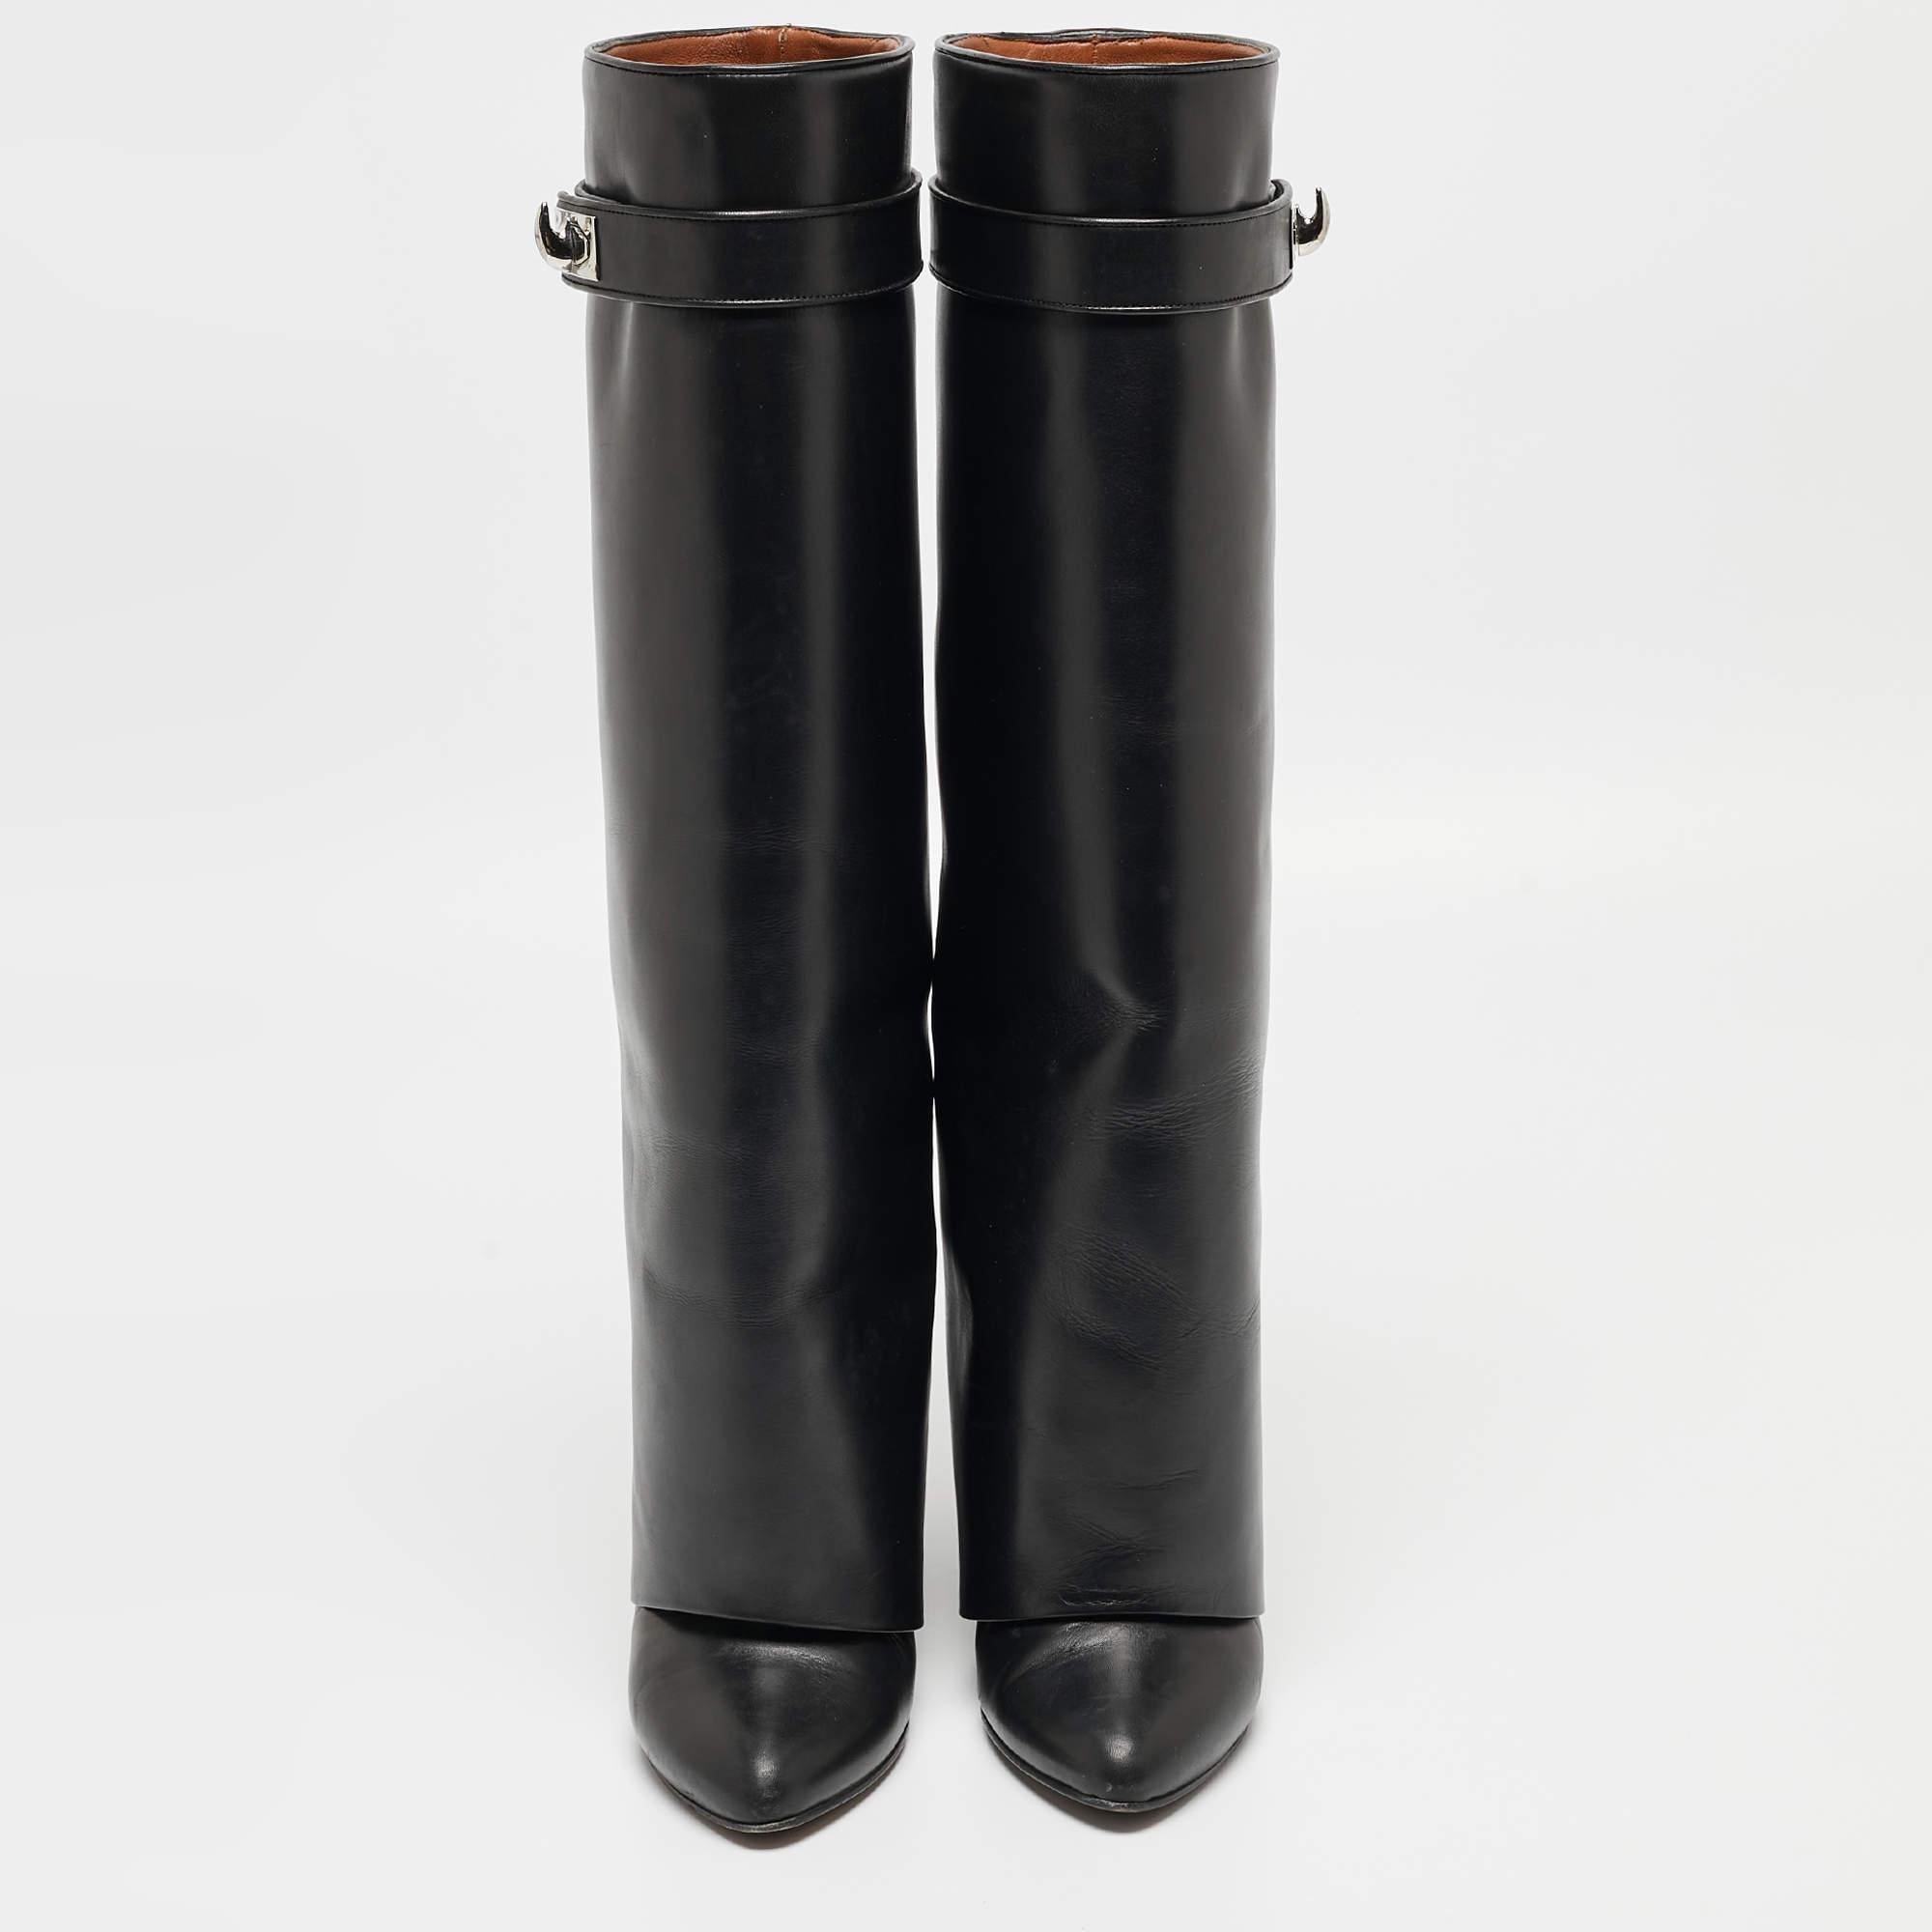 Wir lieben diese Givenchy Stiefel in klassischem Schwarz. Sie haben eine schlanke Silhouette und eine gute Passform, um ein Statement zu setzen. Tragen Sie sie unter Maxiröcken für einen Hauch von Glamour, oder lassen Sie sie mit kurzen